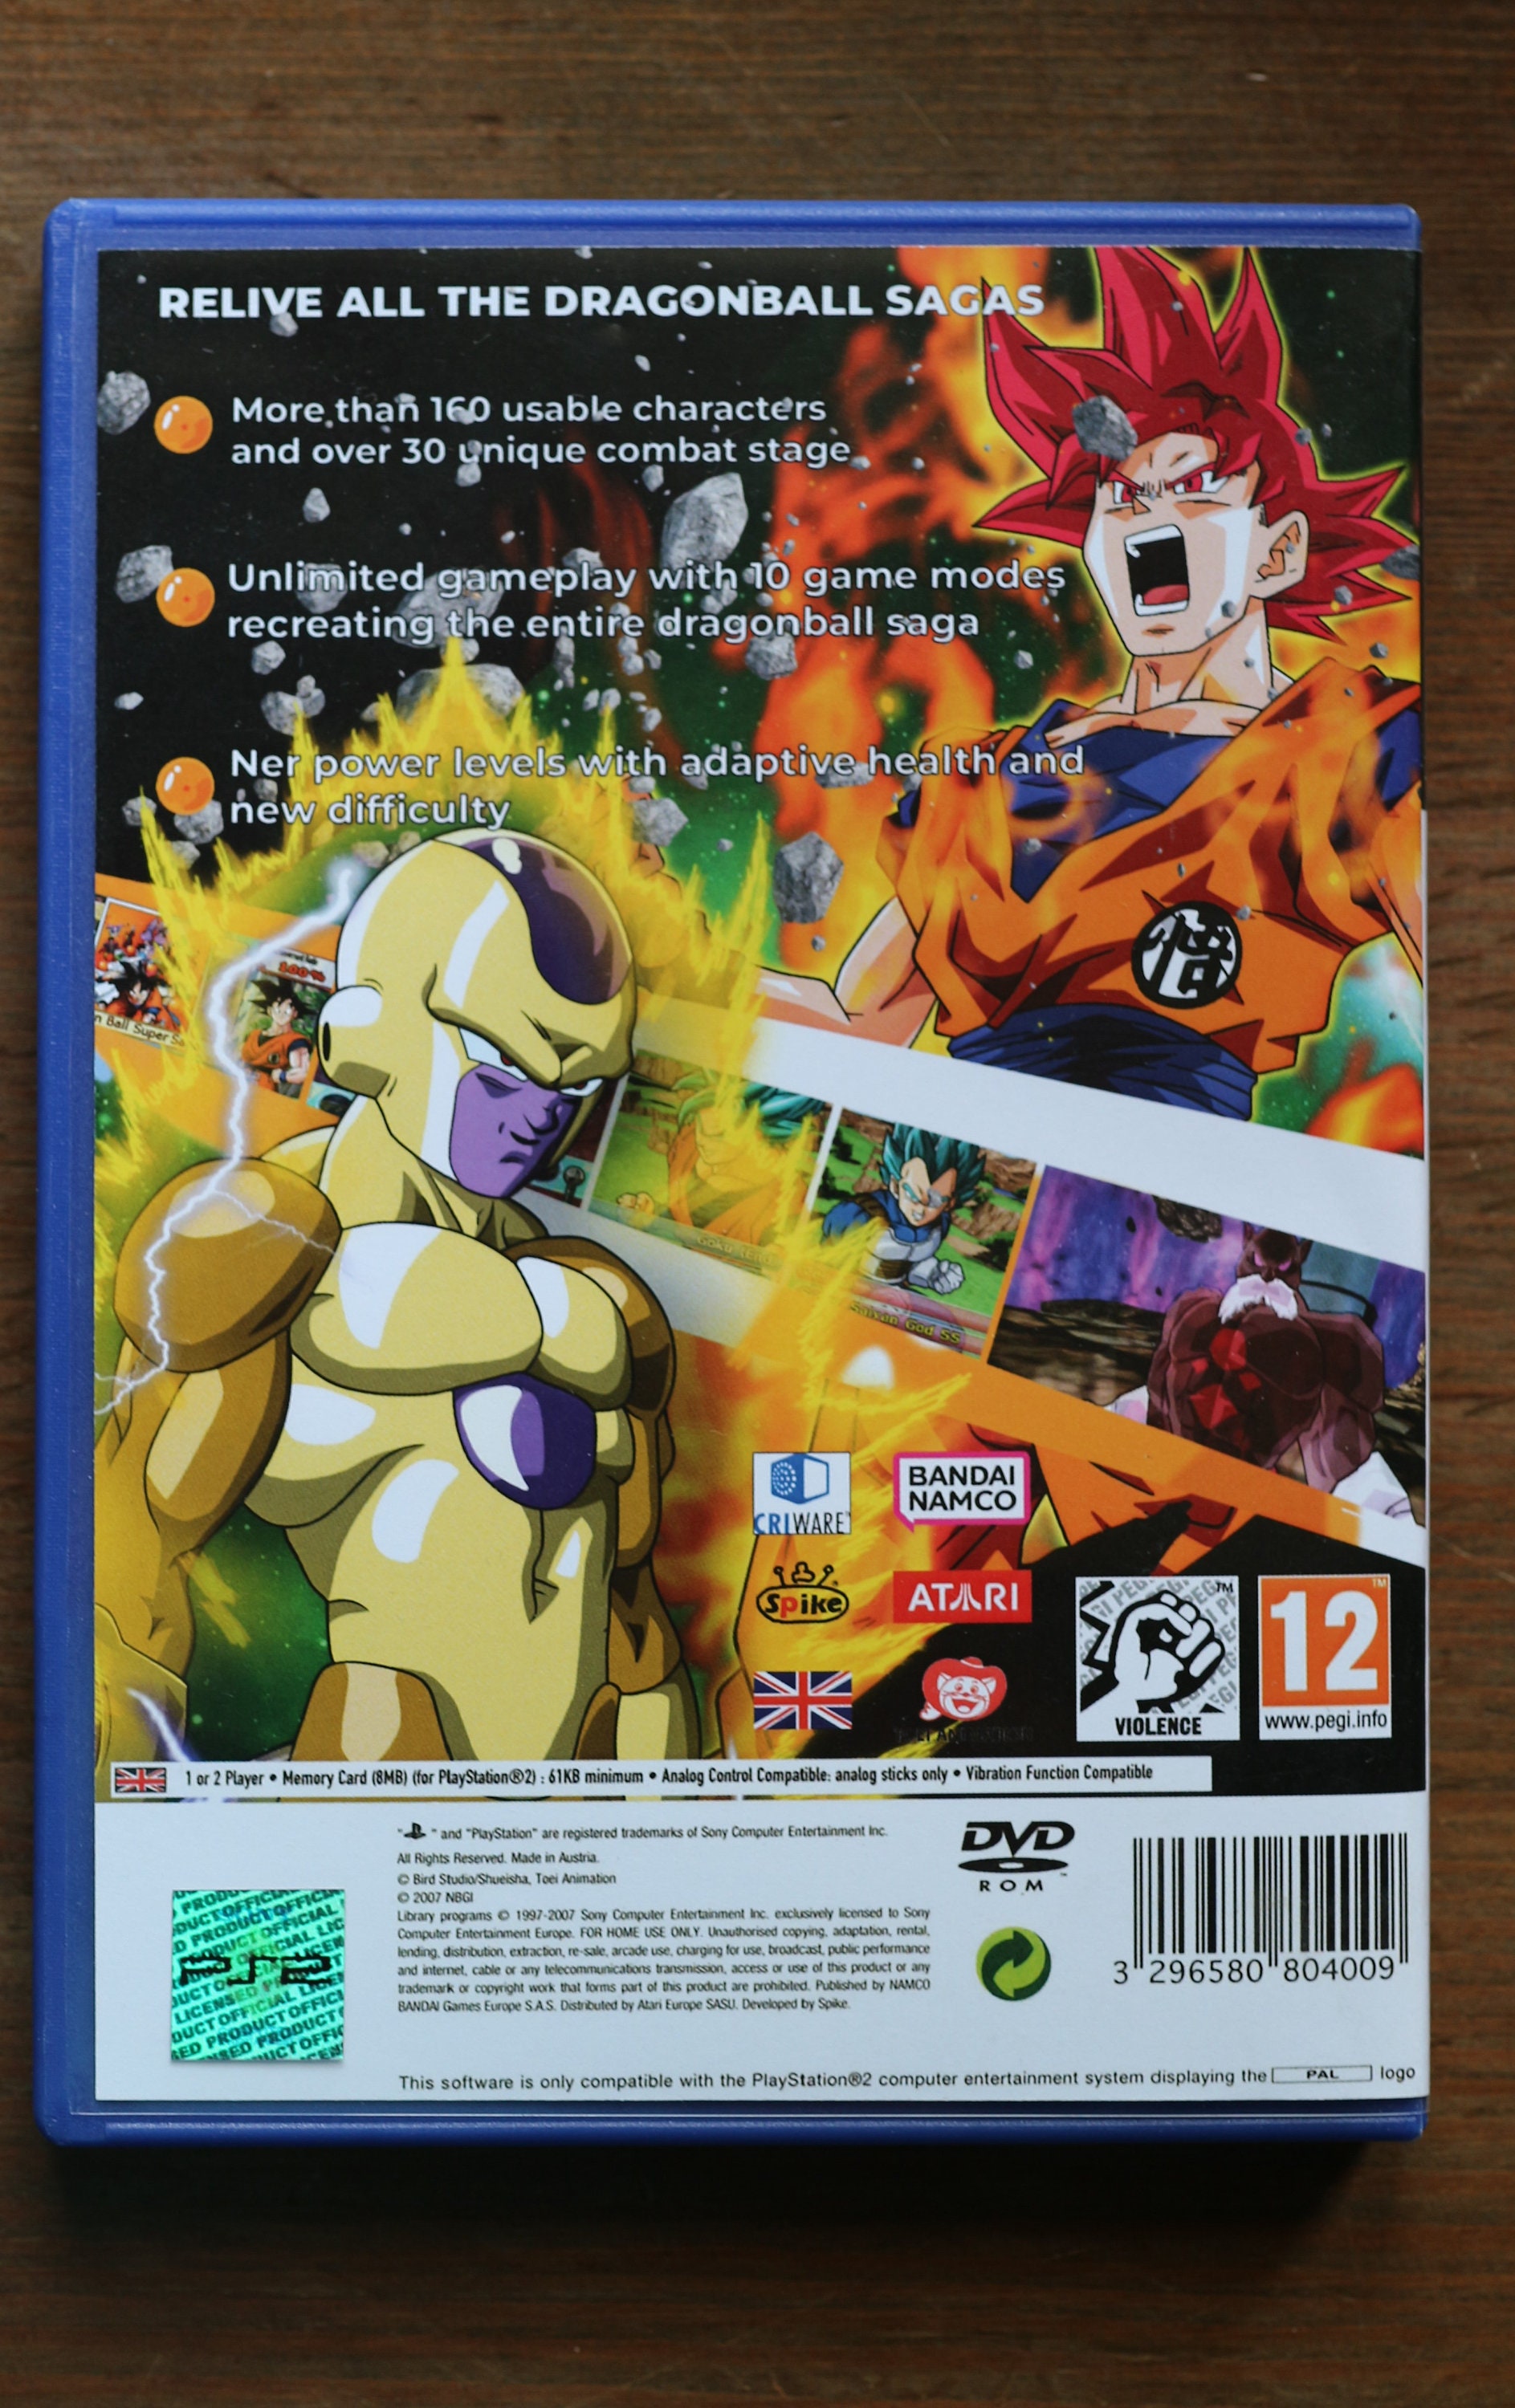 Dragon Ball Z: Budokai Tenkaichi 4 REPRO MOD PAL NTSC PS2